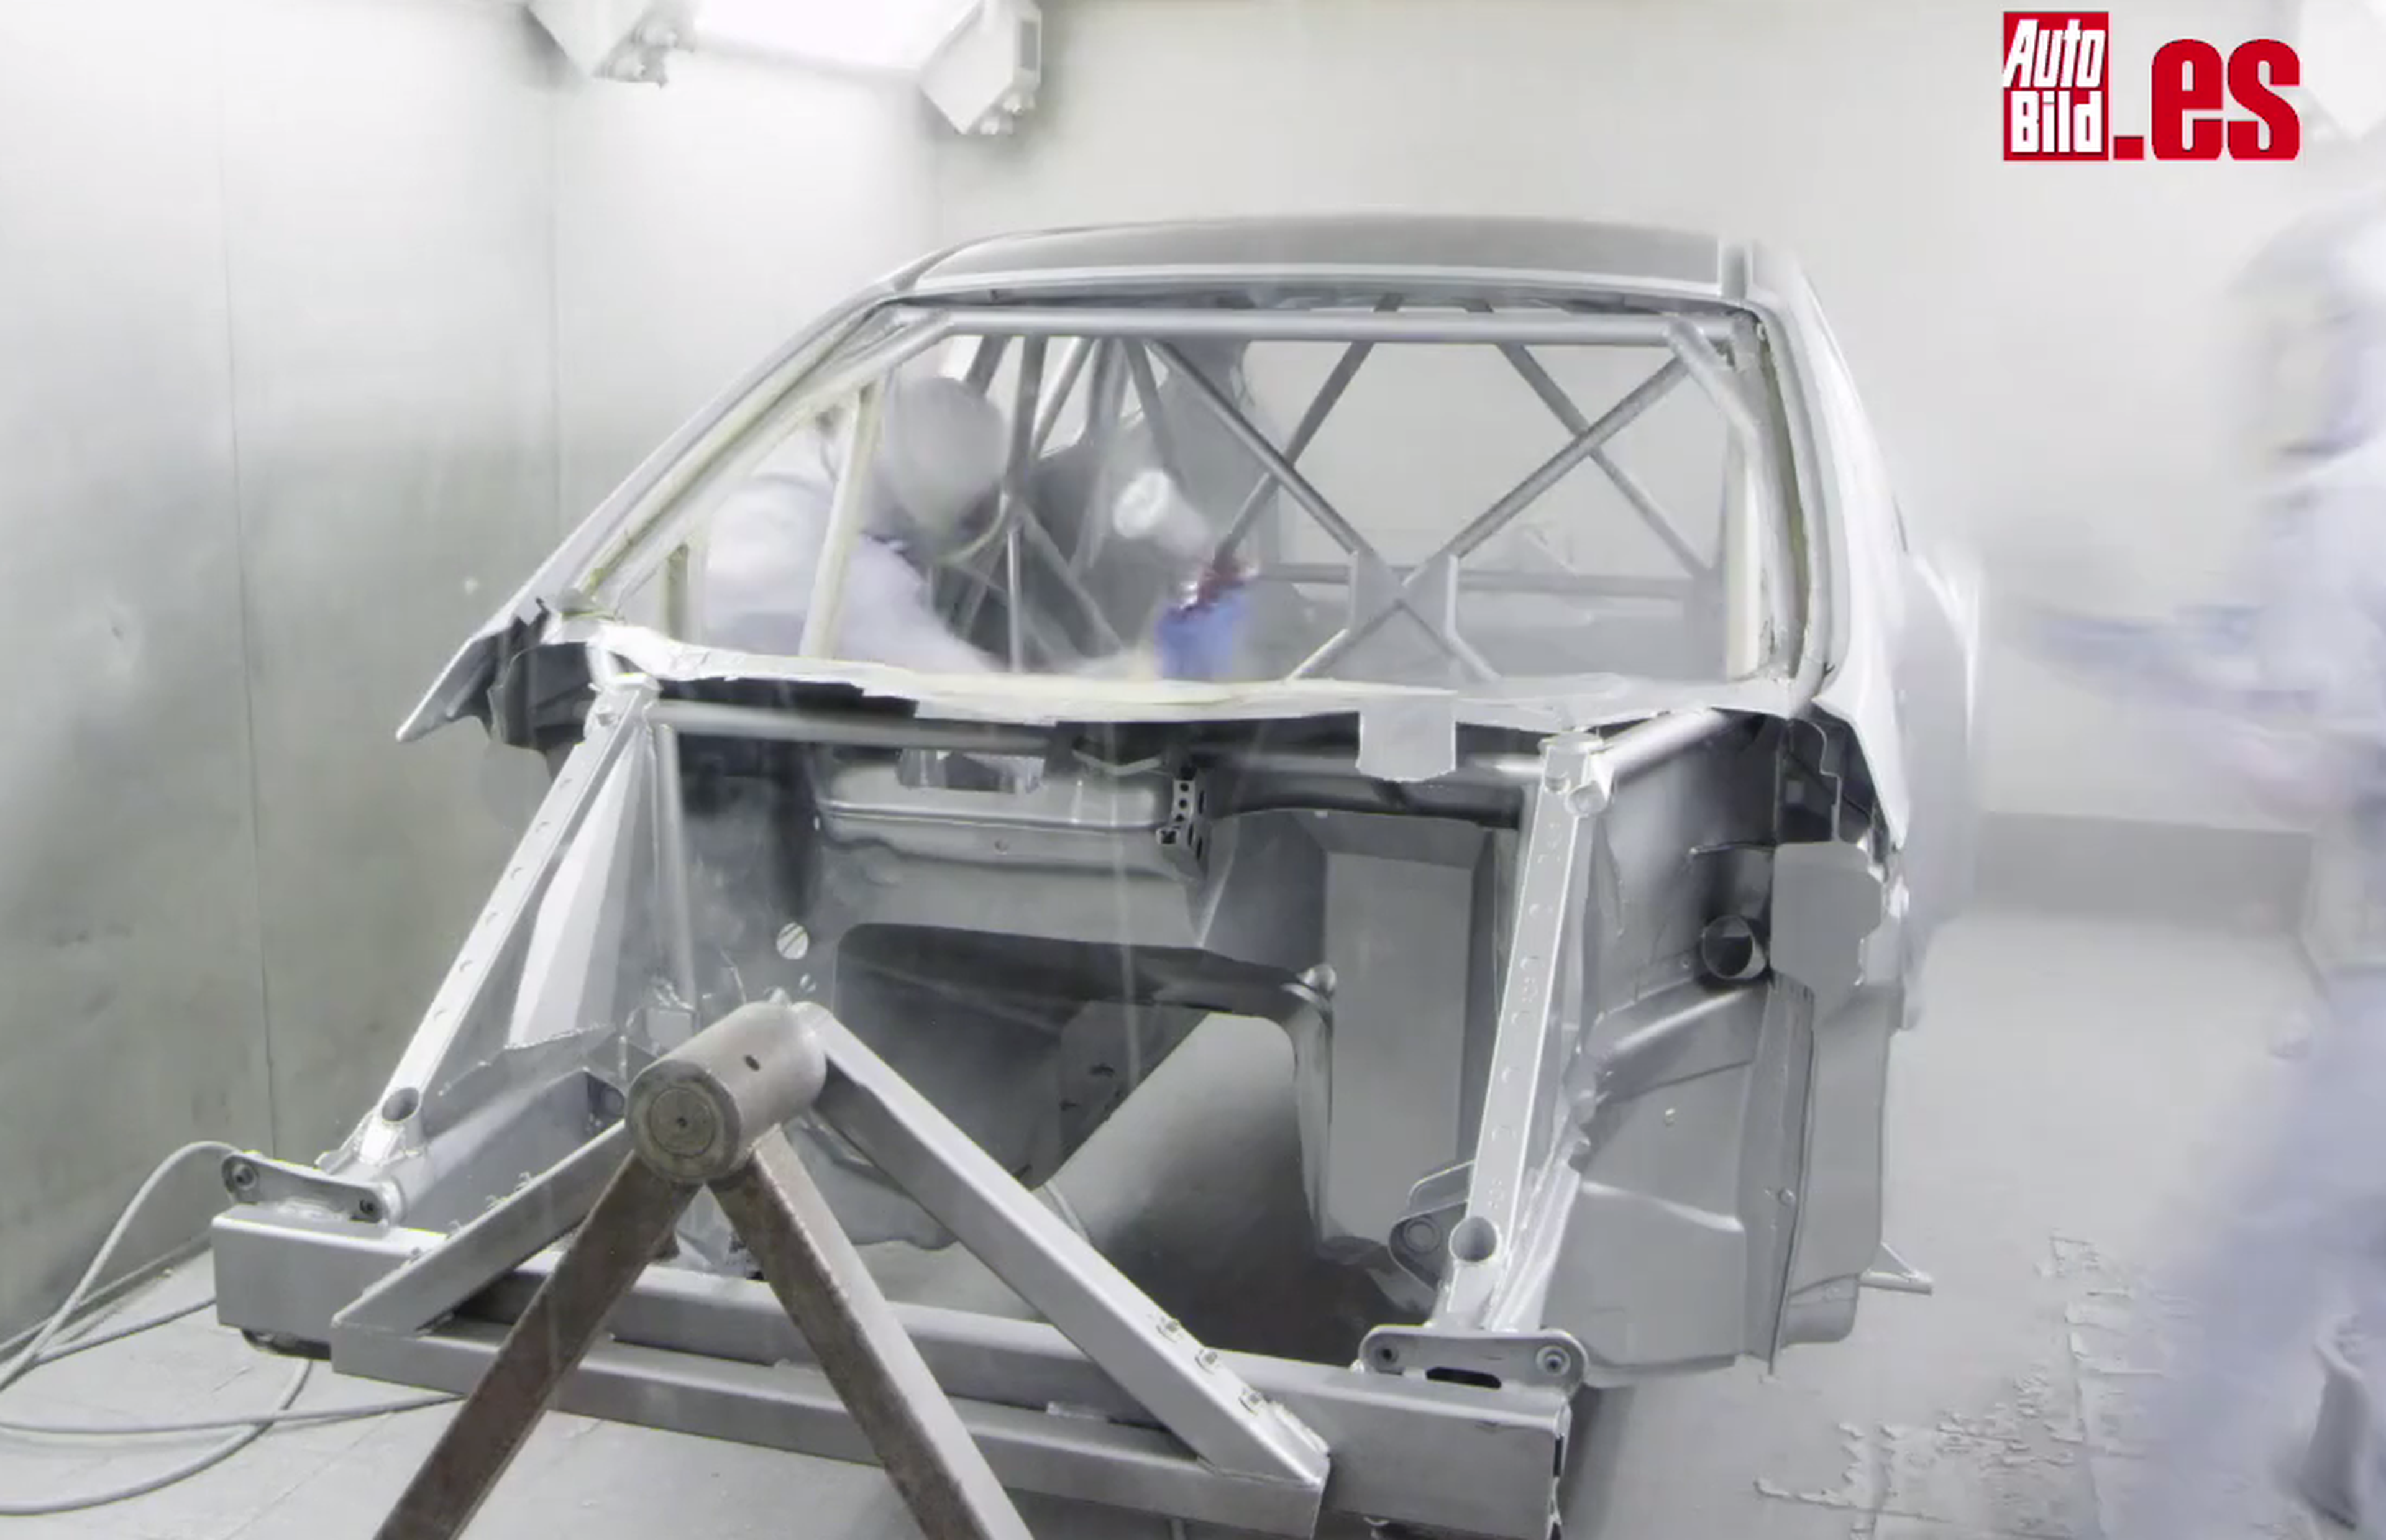 Ford Focus RS RX, vistazo rápido al proceso de fabricación